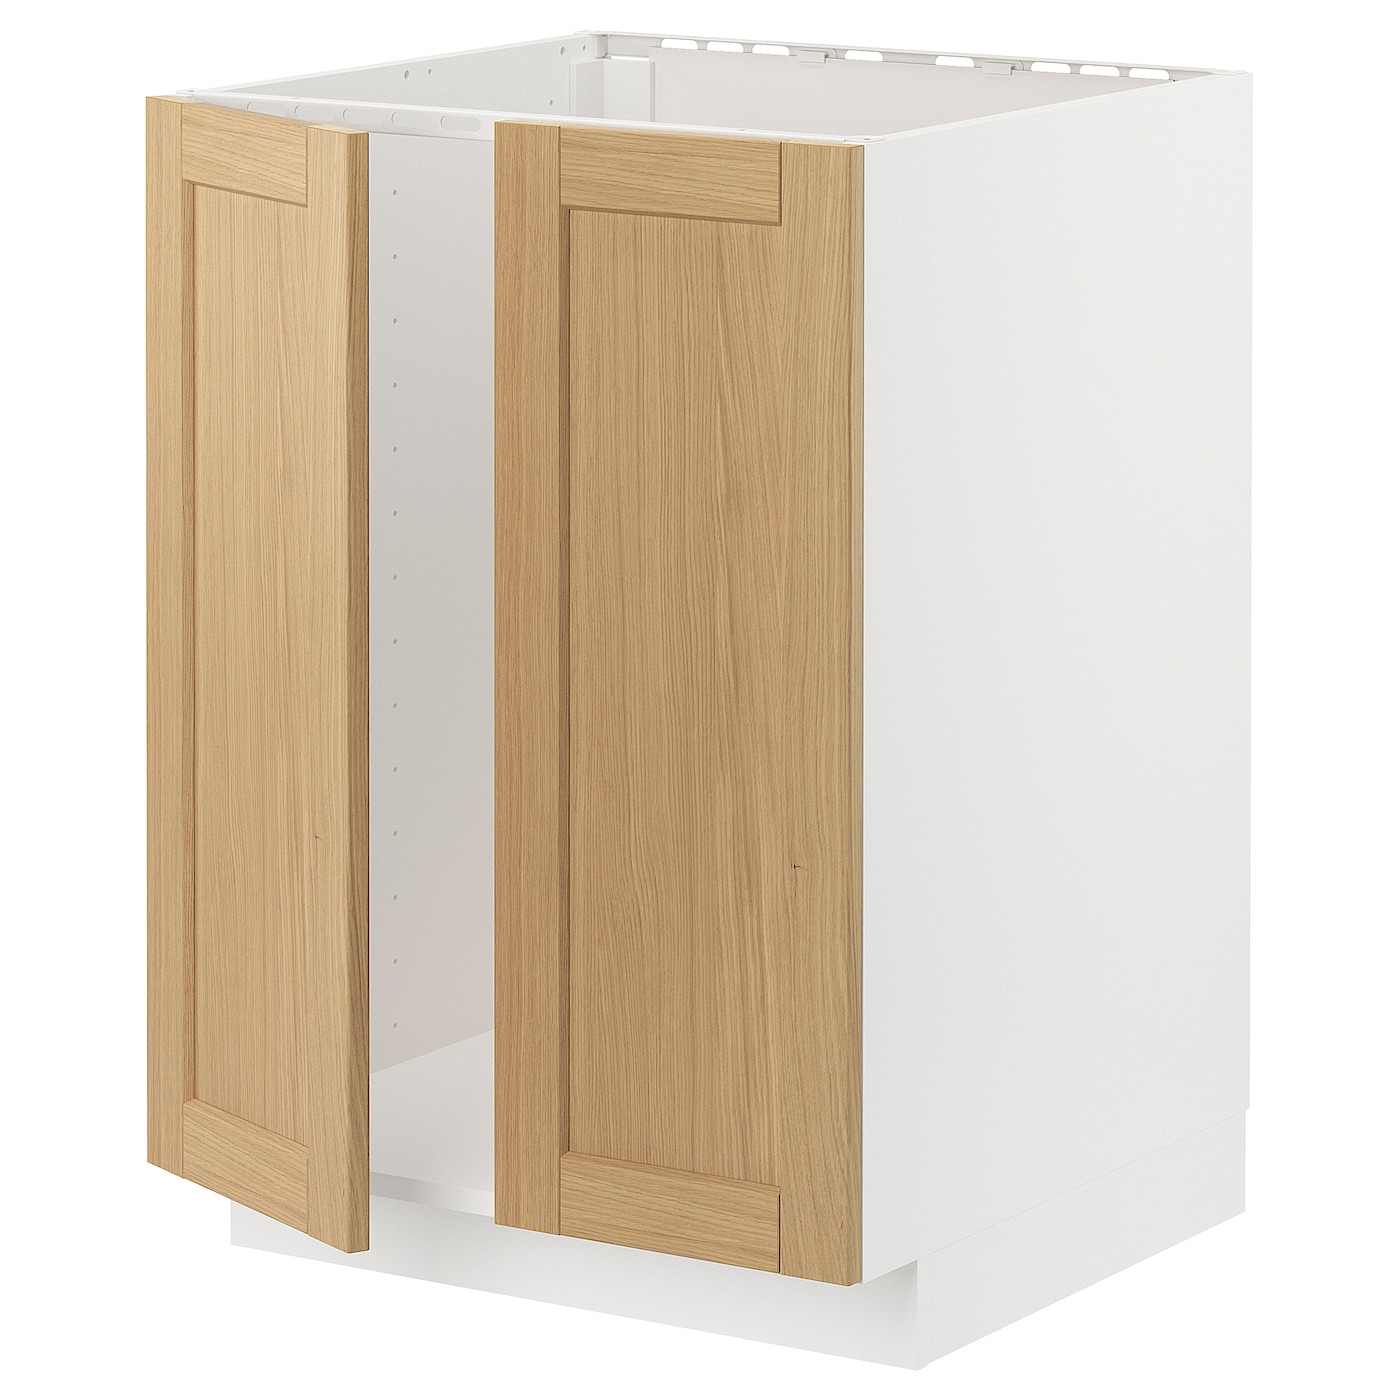 Напольный шкаф - METOD IKEA/ МЕТОД ИКЕА,  60х60 см, белый/под беленый дуб